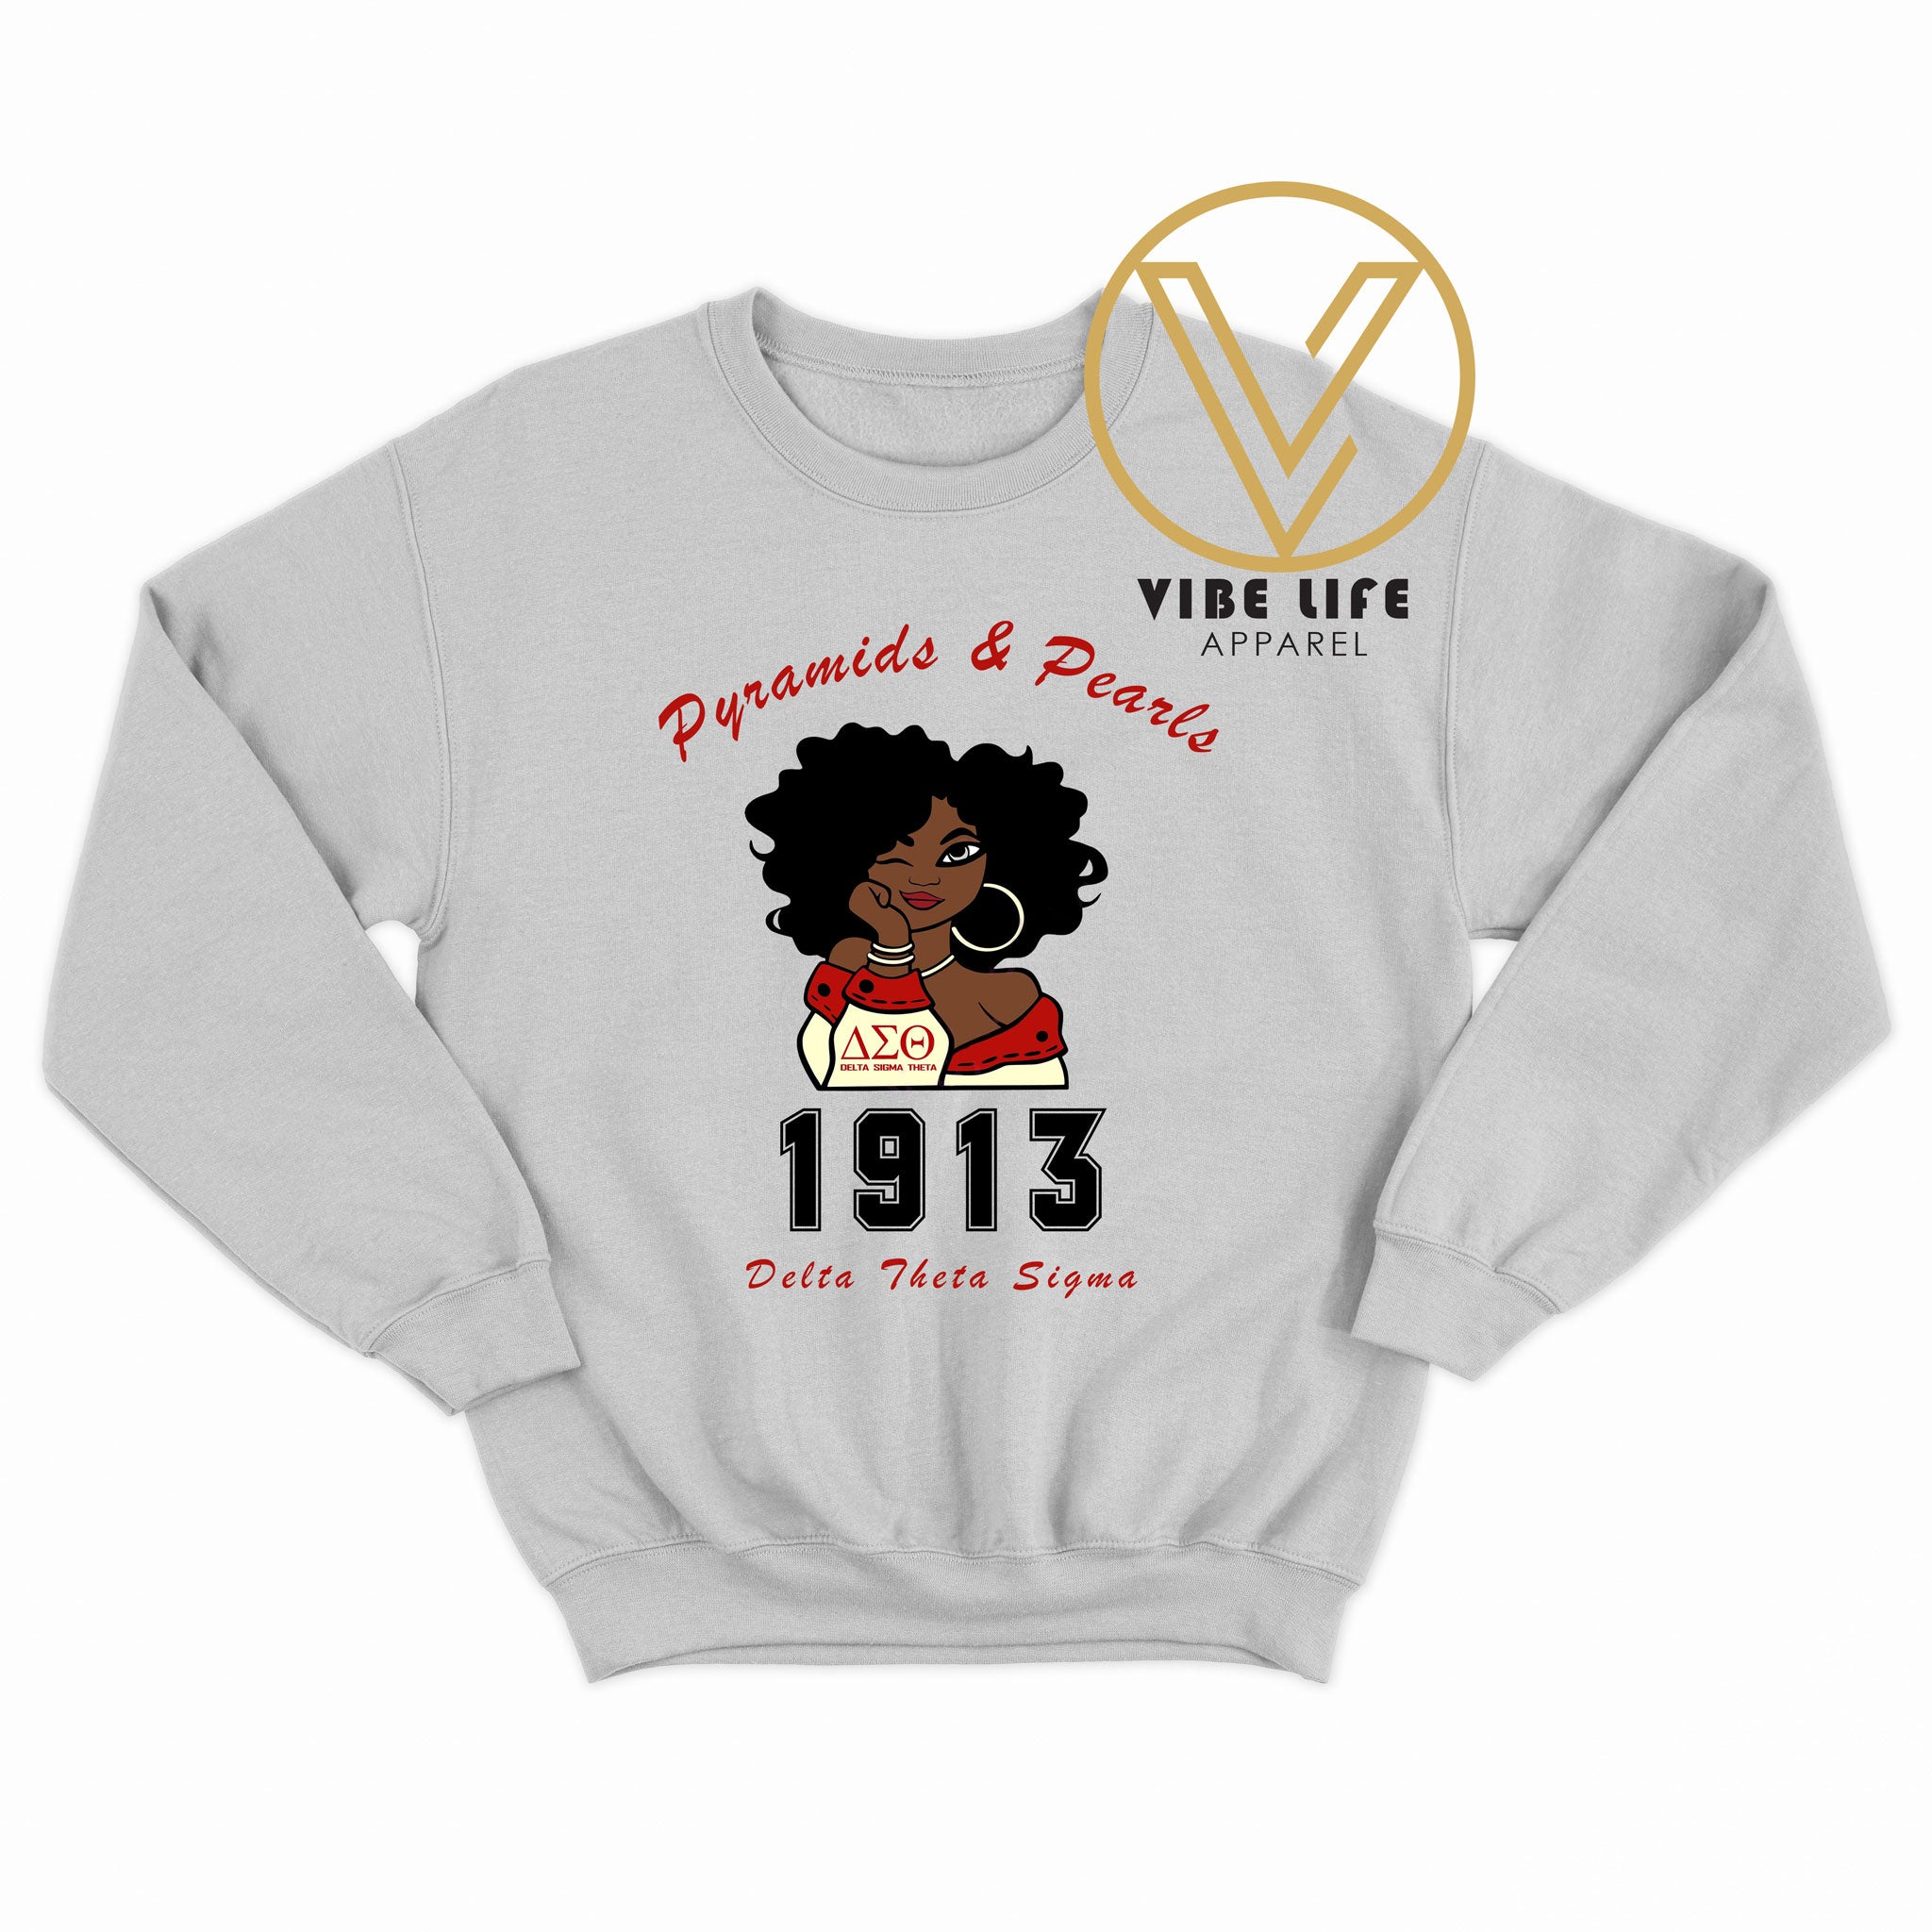 ΔΣΘ - Delta Sigma Theta - 1913 - Sweatshirt